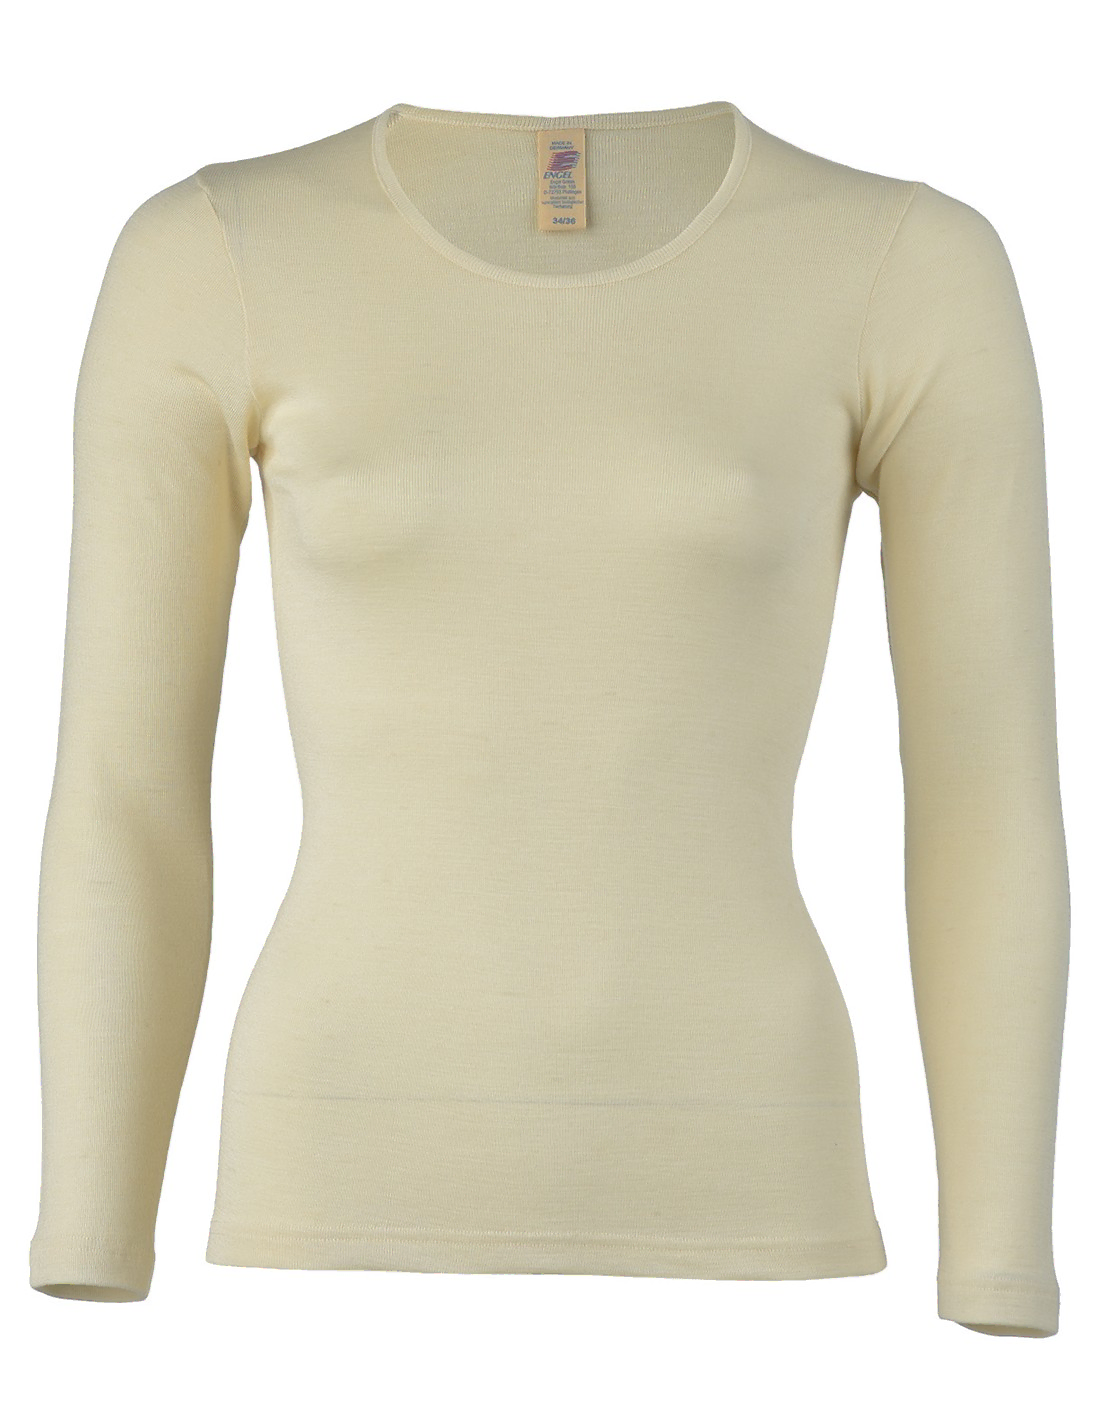 Image of Dames Shirt Lange Mouw Zijde Wol Engel Natur, Kleur Gebroken wit, Maat 34/36 - Small